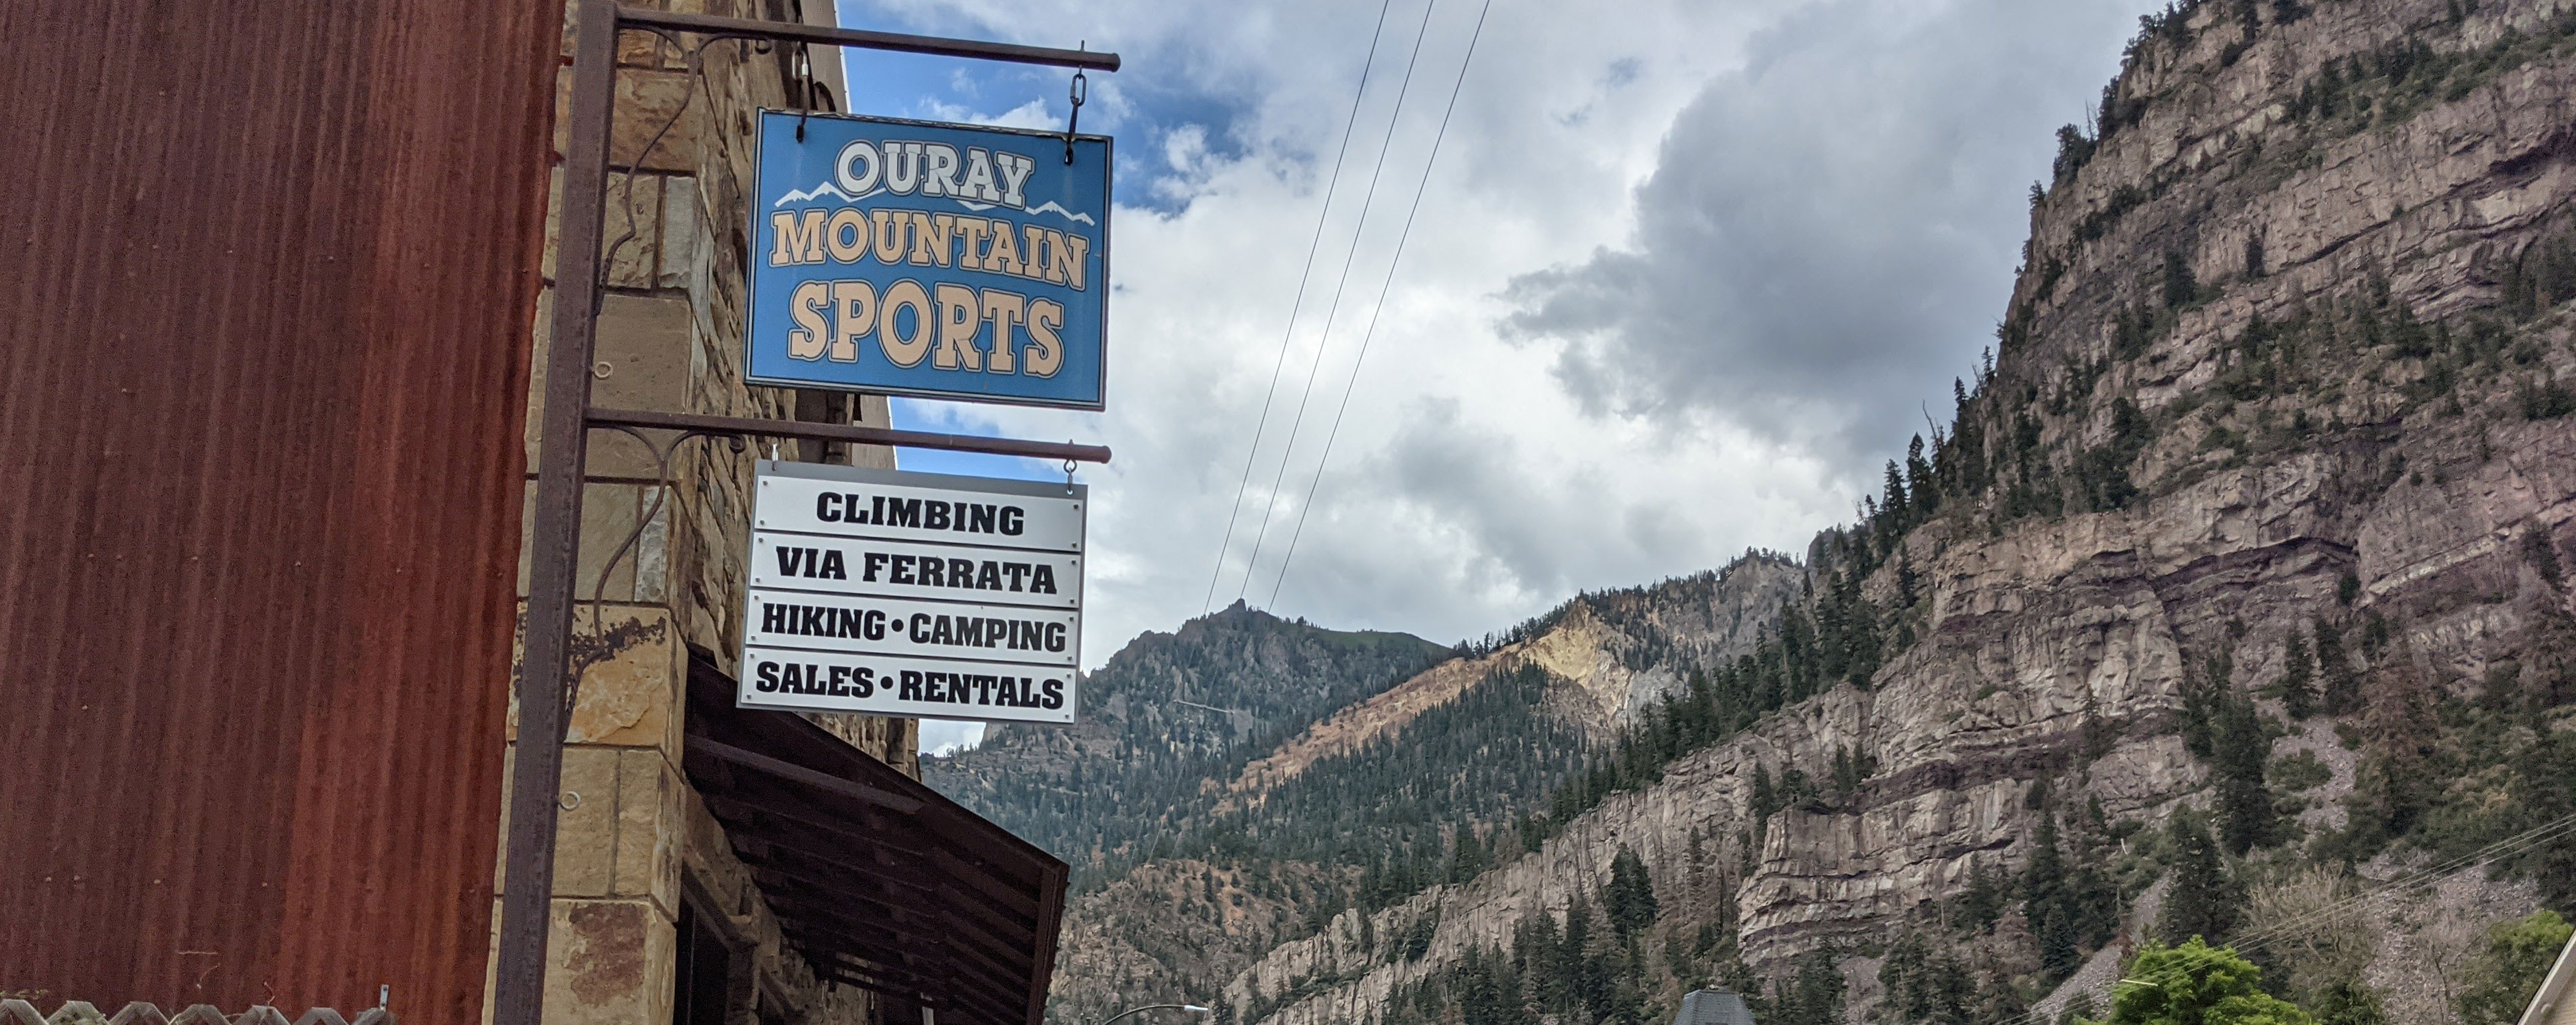 ouray-mountain-sports